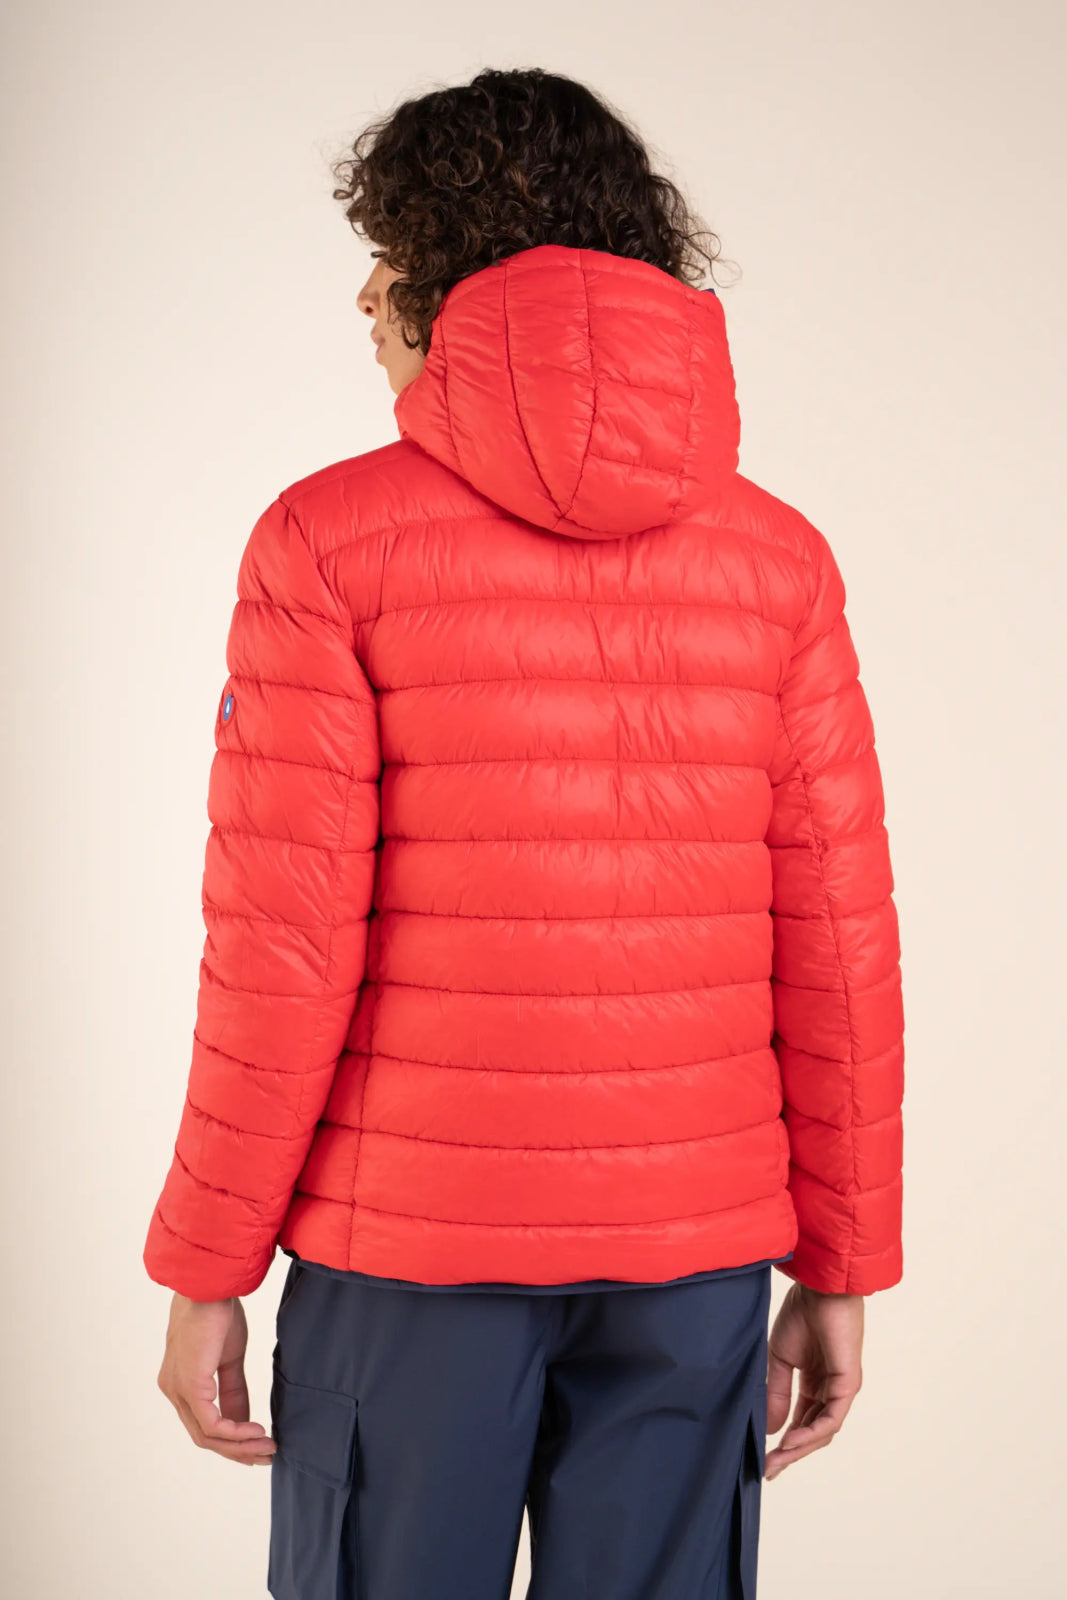 Charonne - Reversible down jacket - Flotte #couleur_indigo-rouge